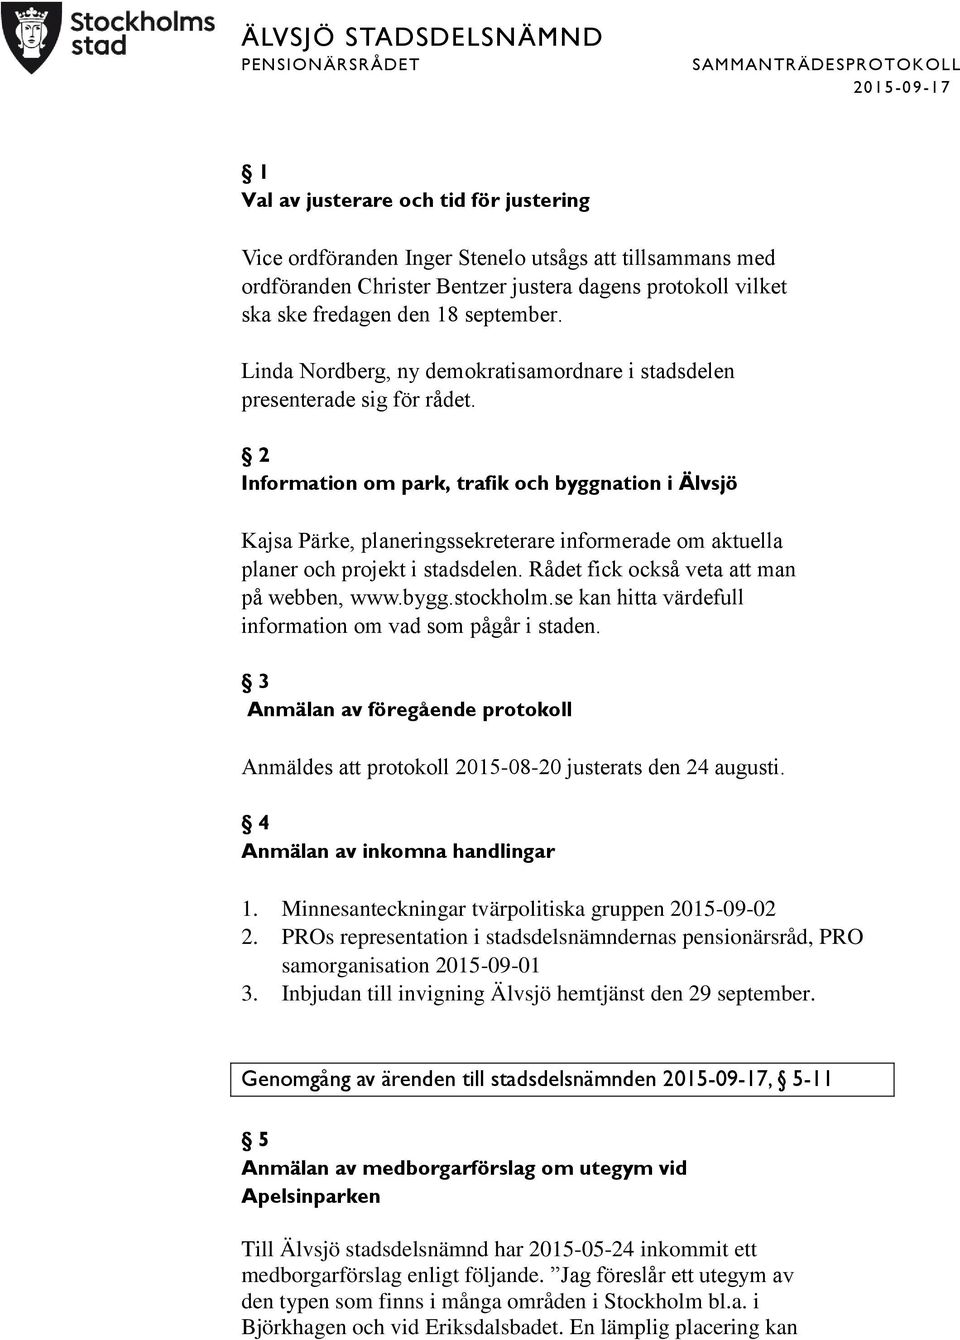 2 Information om park, trafik och byggnation i Älvsjö Kajsa Pärke, planeringssekreterare informerade om aktuella planer och projekt i stadsdelen. Rådet fick också veta att man på webben, www.bygg.stockholm.